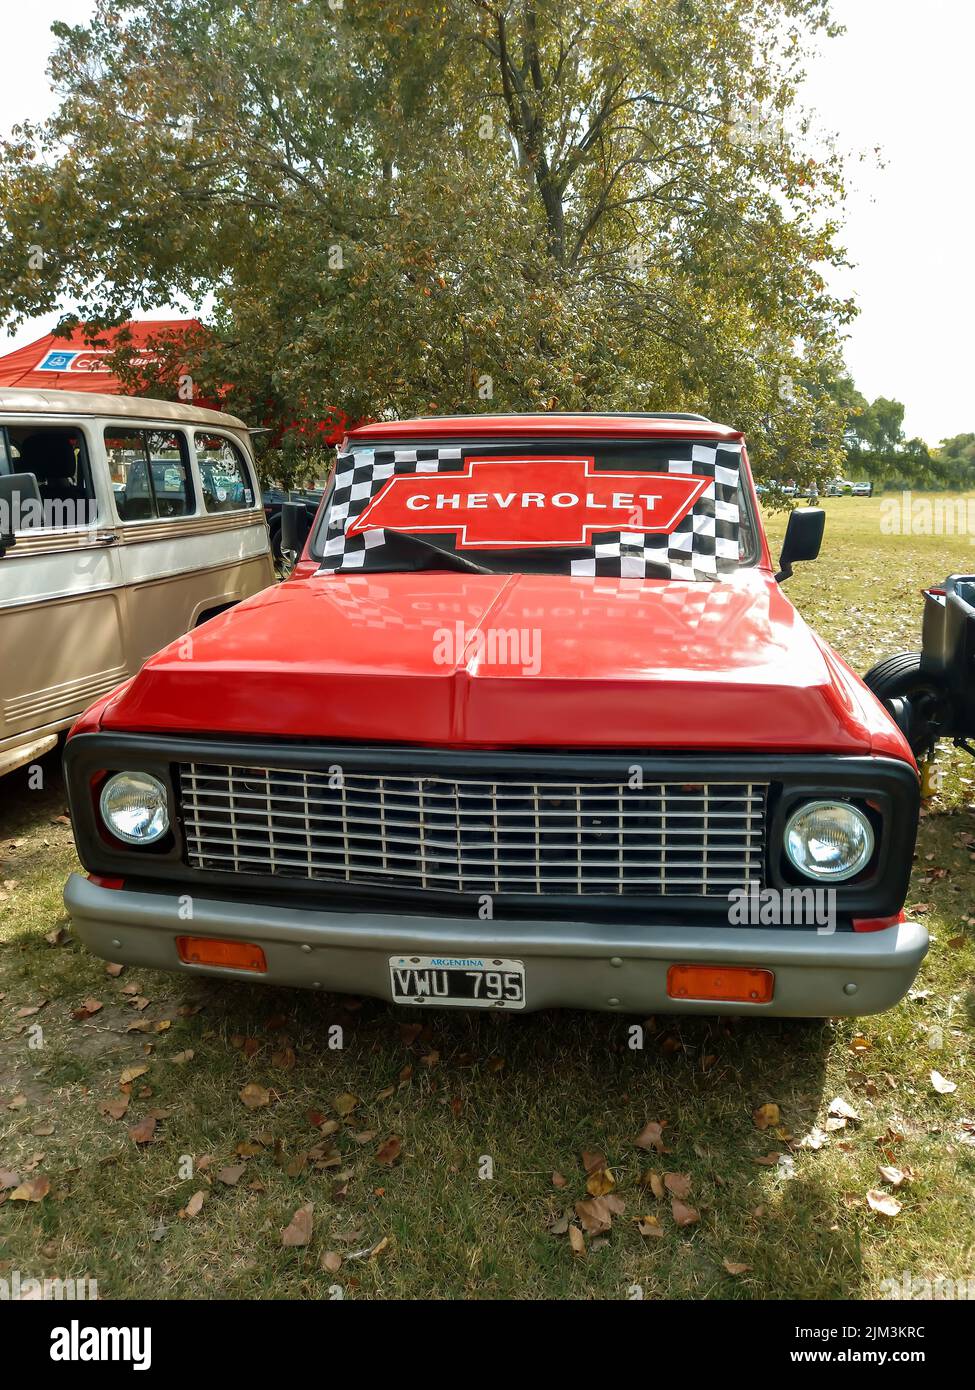 Chevrolet-Emblem auf der Windschutzscheibe eines alten roten Pickup-Trucks aus der Zeit um 1960. Grünes Gras Natur. Vorderansicht. Grill. Oldtimer-Show. Copyspace Stockfoto